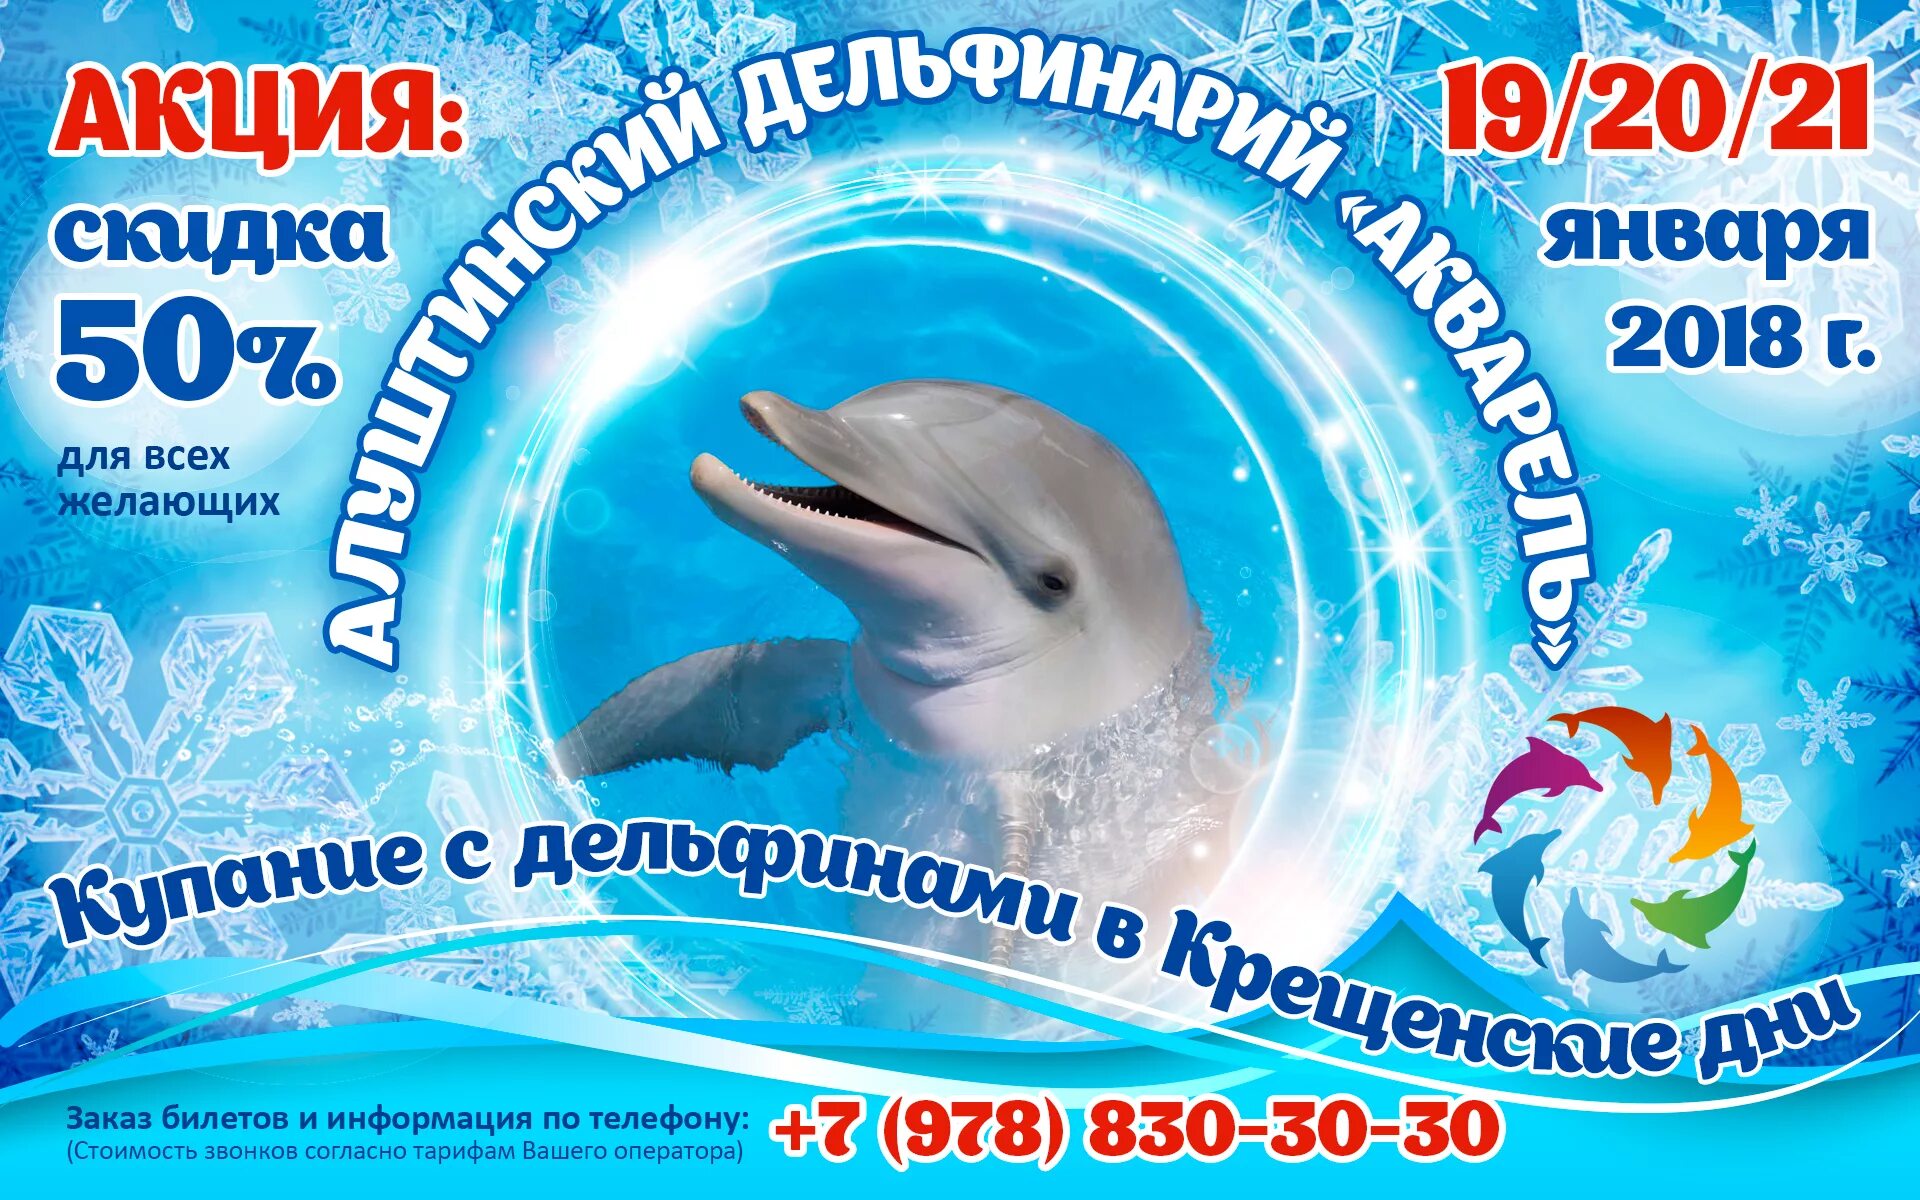 Подарочный сертификат в дельфинарий. Сертификат на посещение дельфинария. Сертификат дельфинарий Новосибирск. Алуштинский дельфинарий подарочный сертификат. Билеты в дельфинарий москва